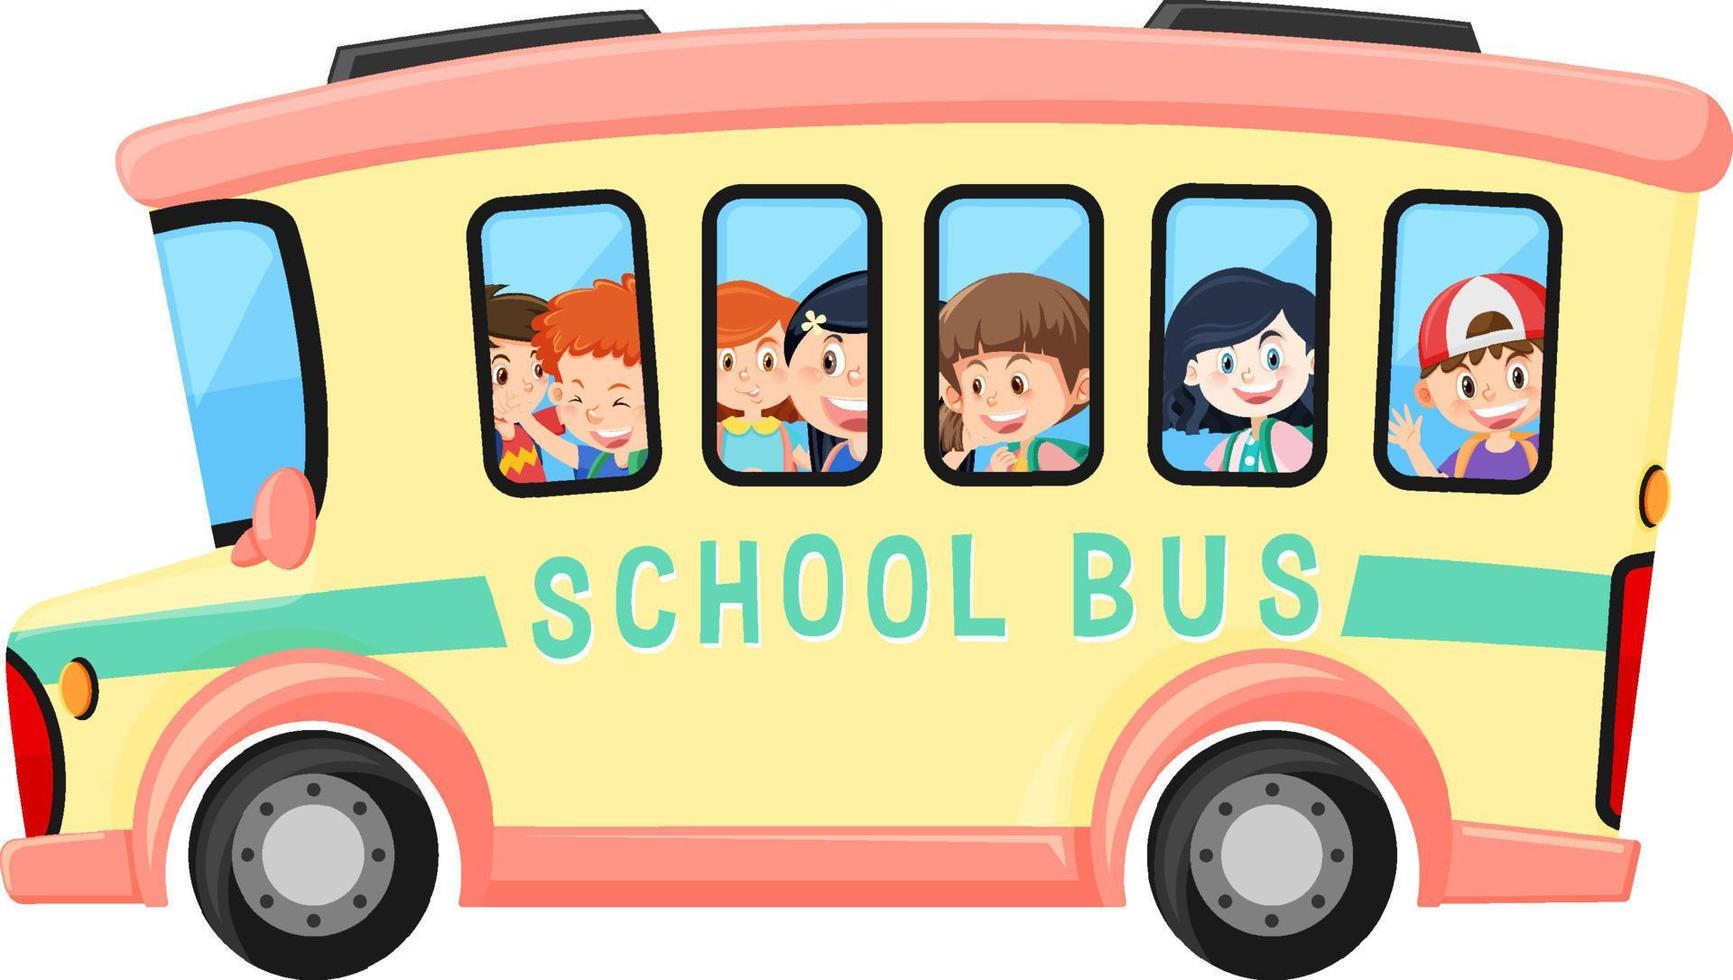 estudante em ônibus escolar em fundo branco vetor